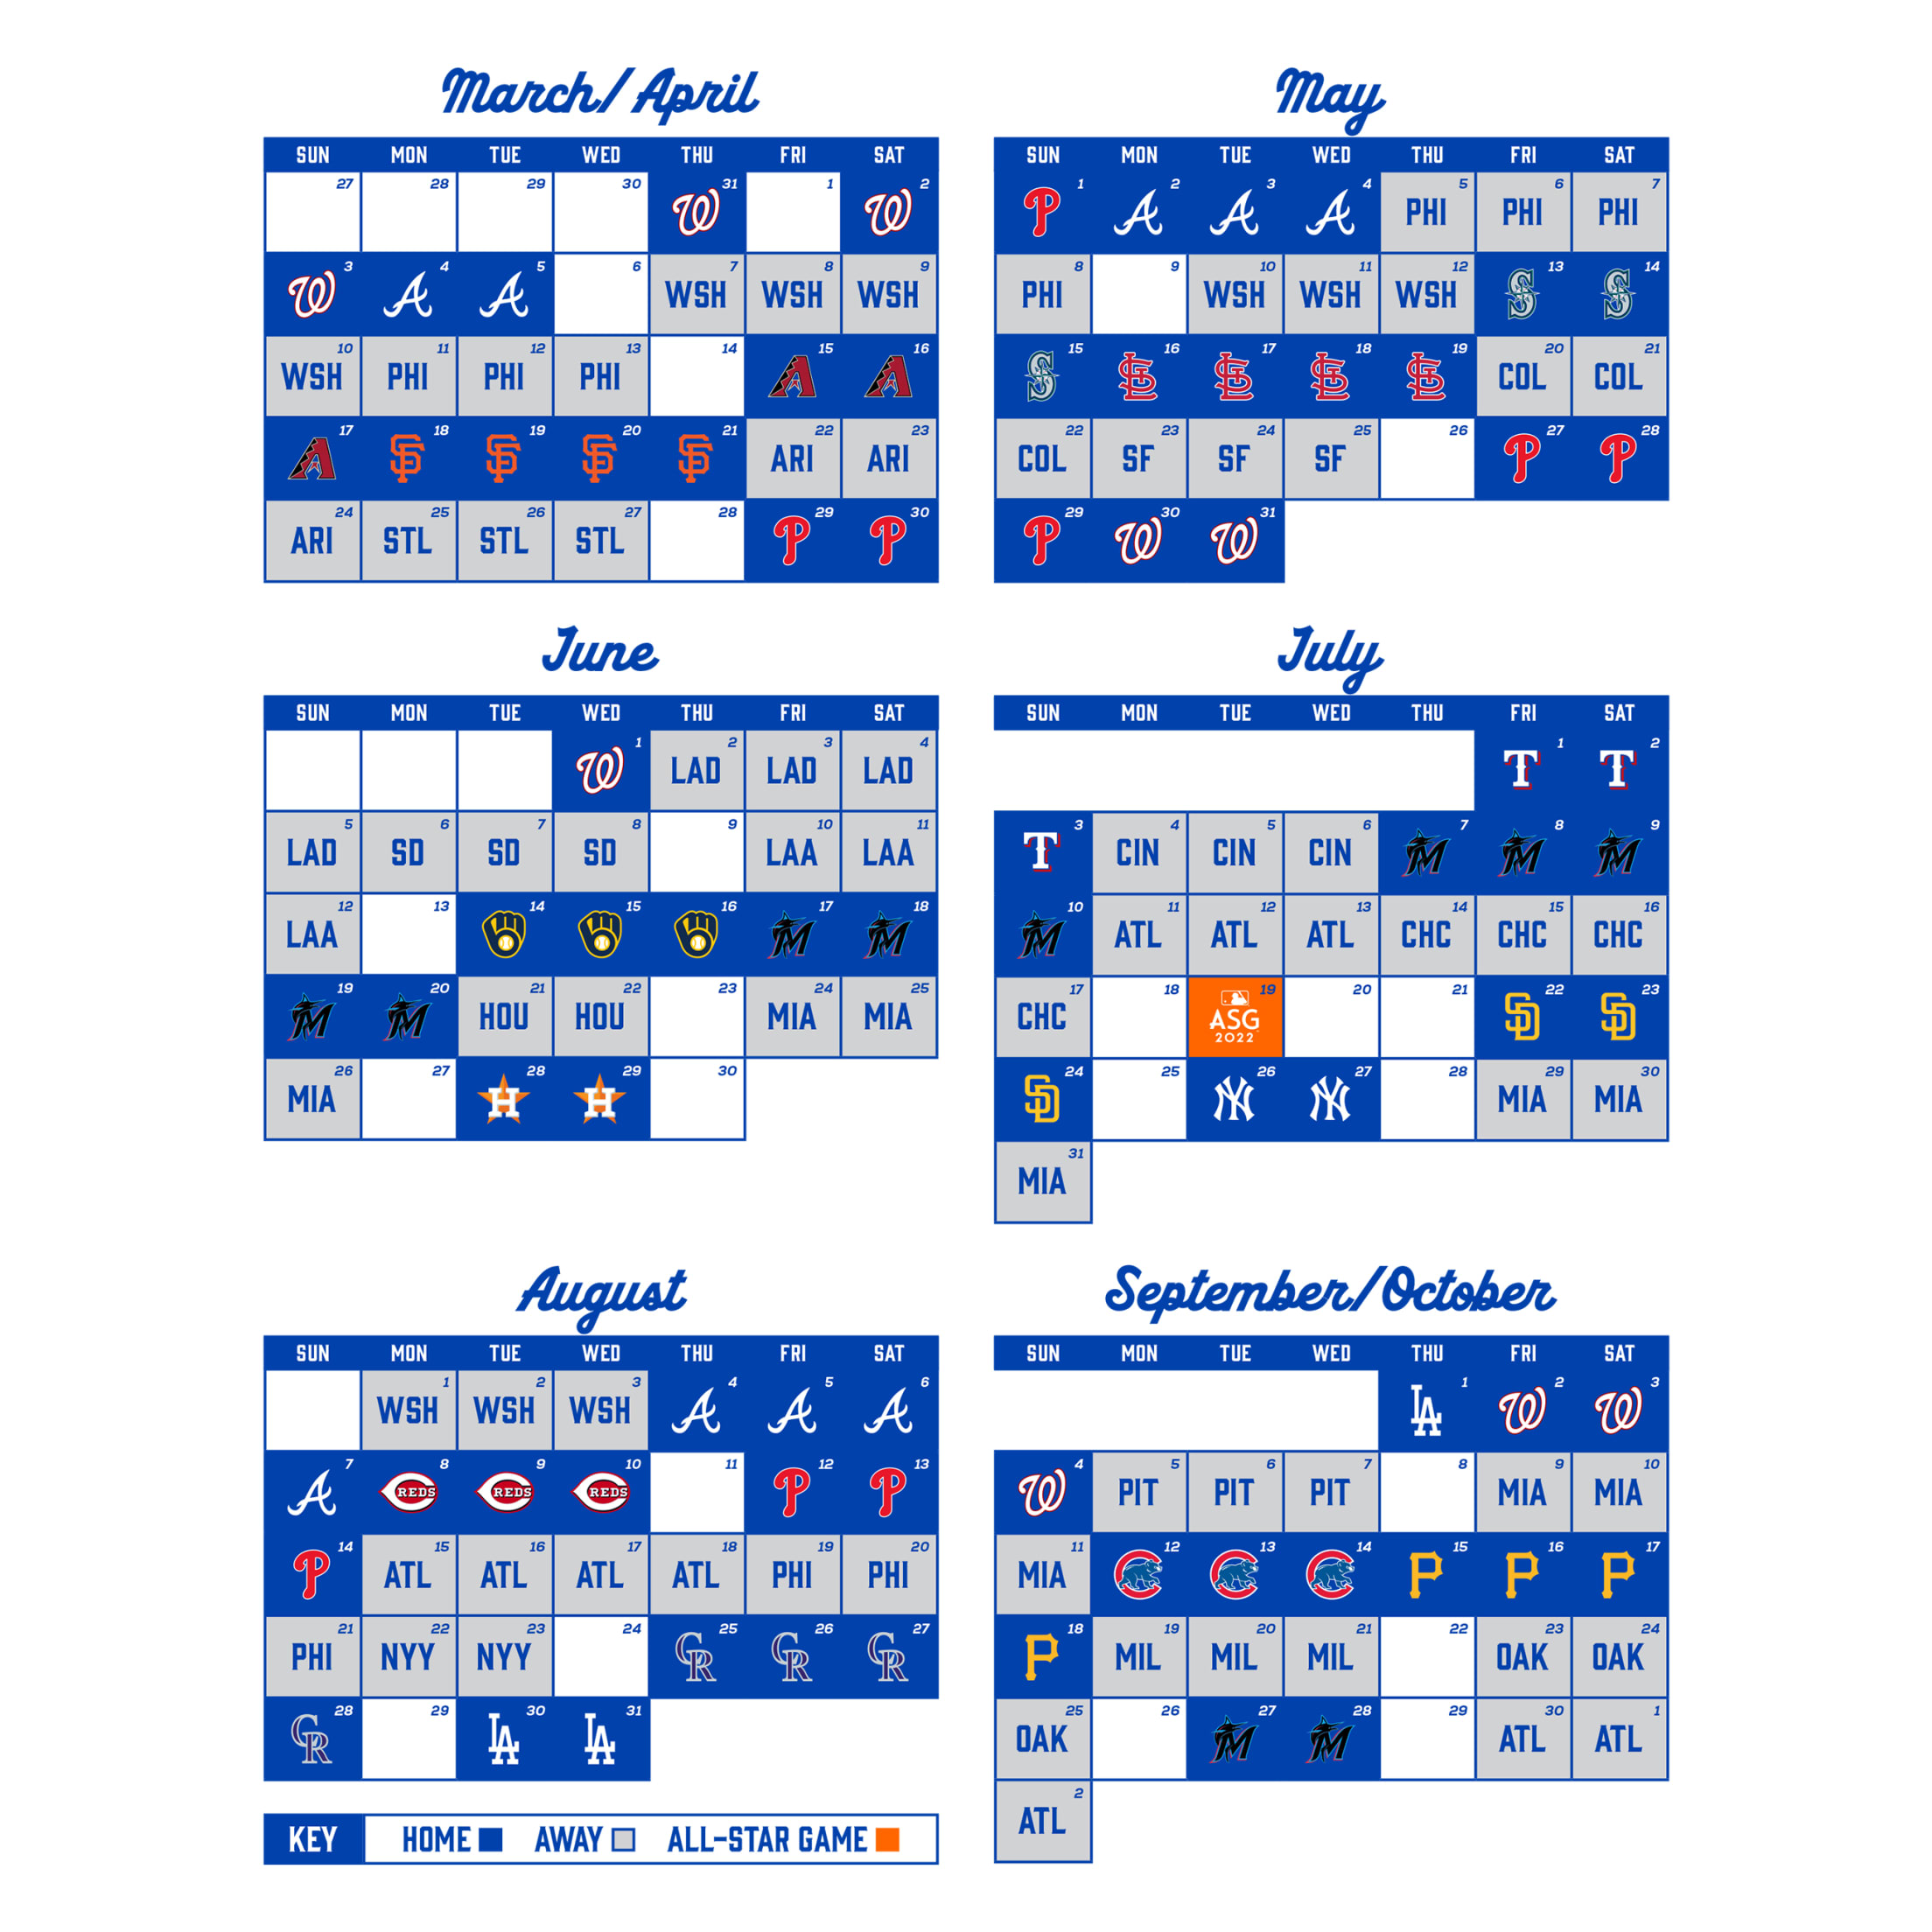 Mets 2022 Promotional Schedule Printable Schedule | New York Mets